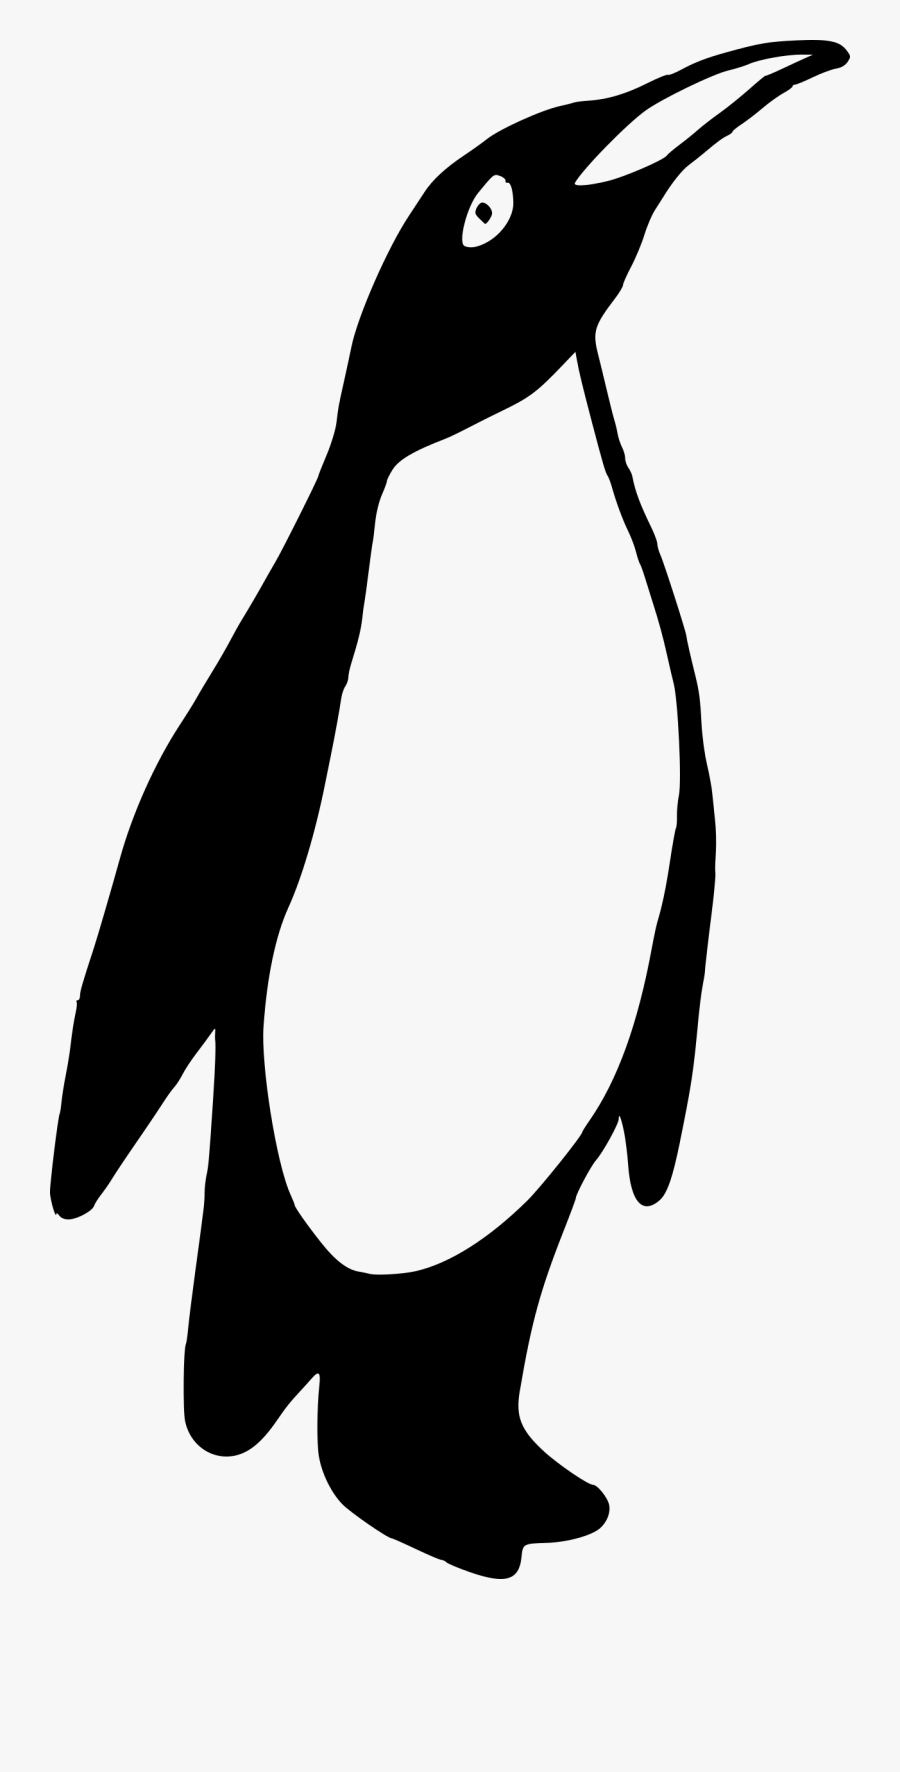 Penguin Black And White Penguin Clip Art Images - Penguin Clipart In Black And White, Transparent Clipart